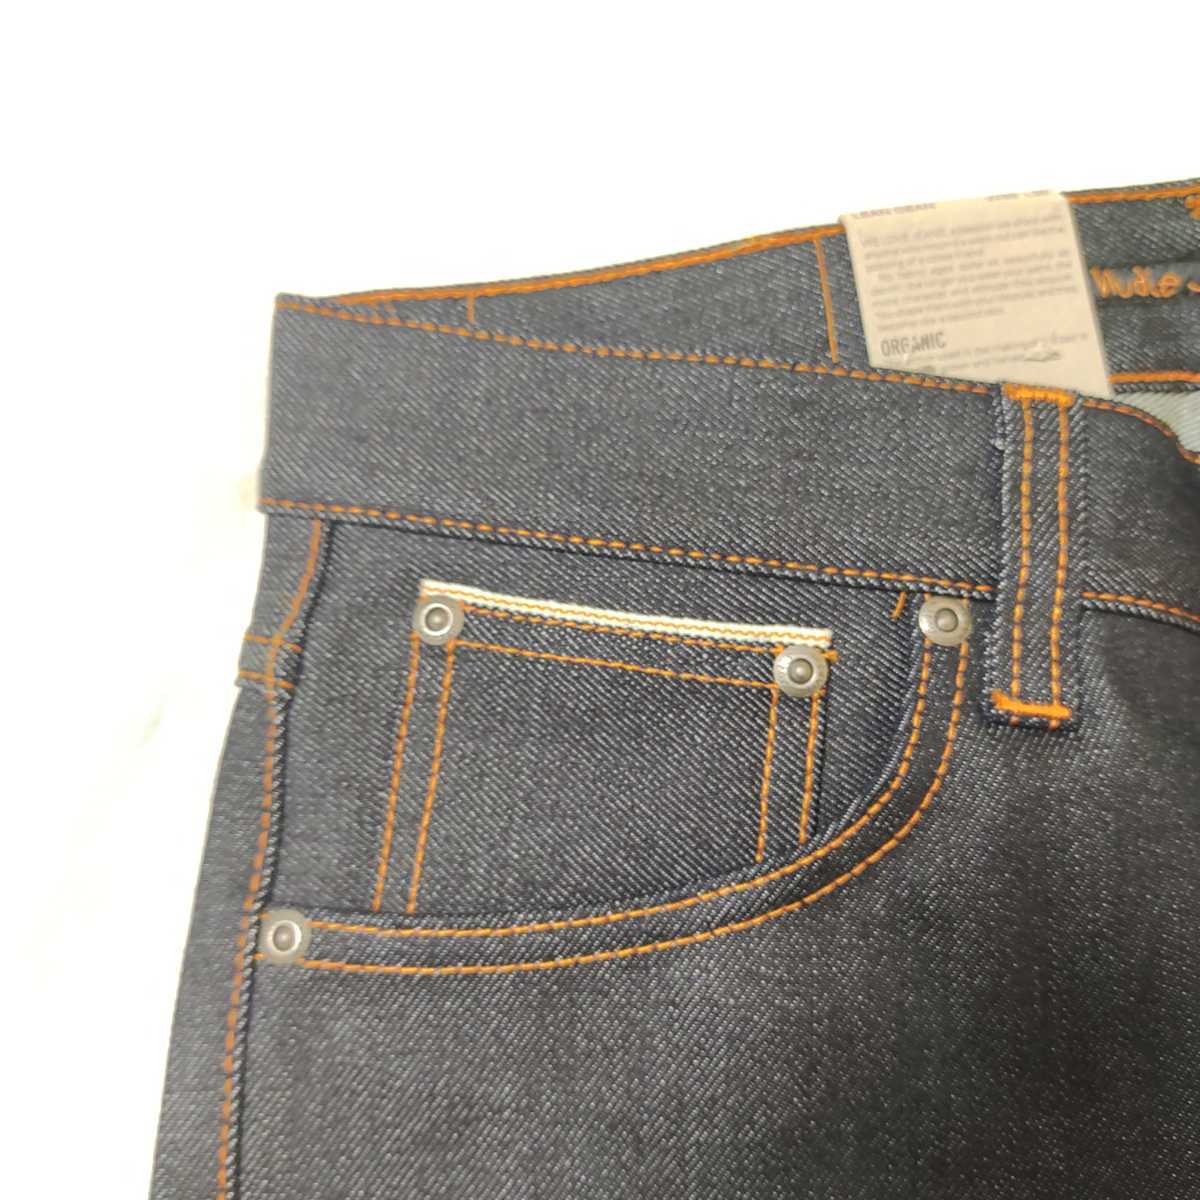 新品 nudie jeans THIN FINN DRY ORANGE SELVAGE W30 L30 ヌーディージーンズ シンフィン セルビッジ  セルビッチ nudiejeans